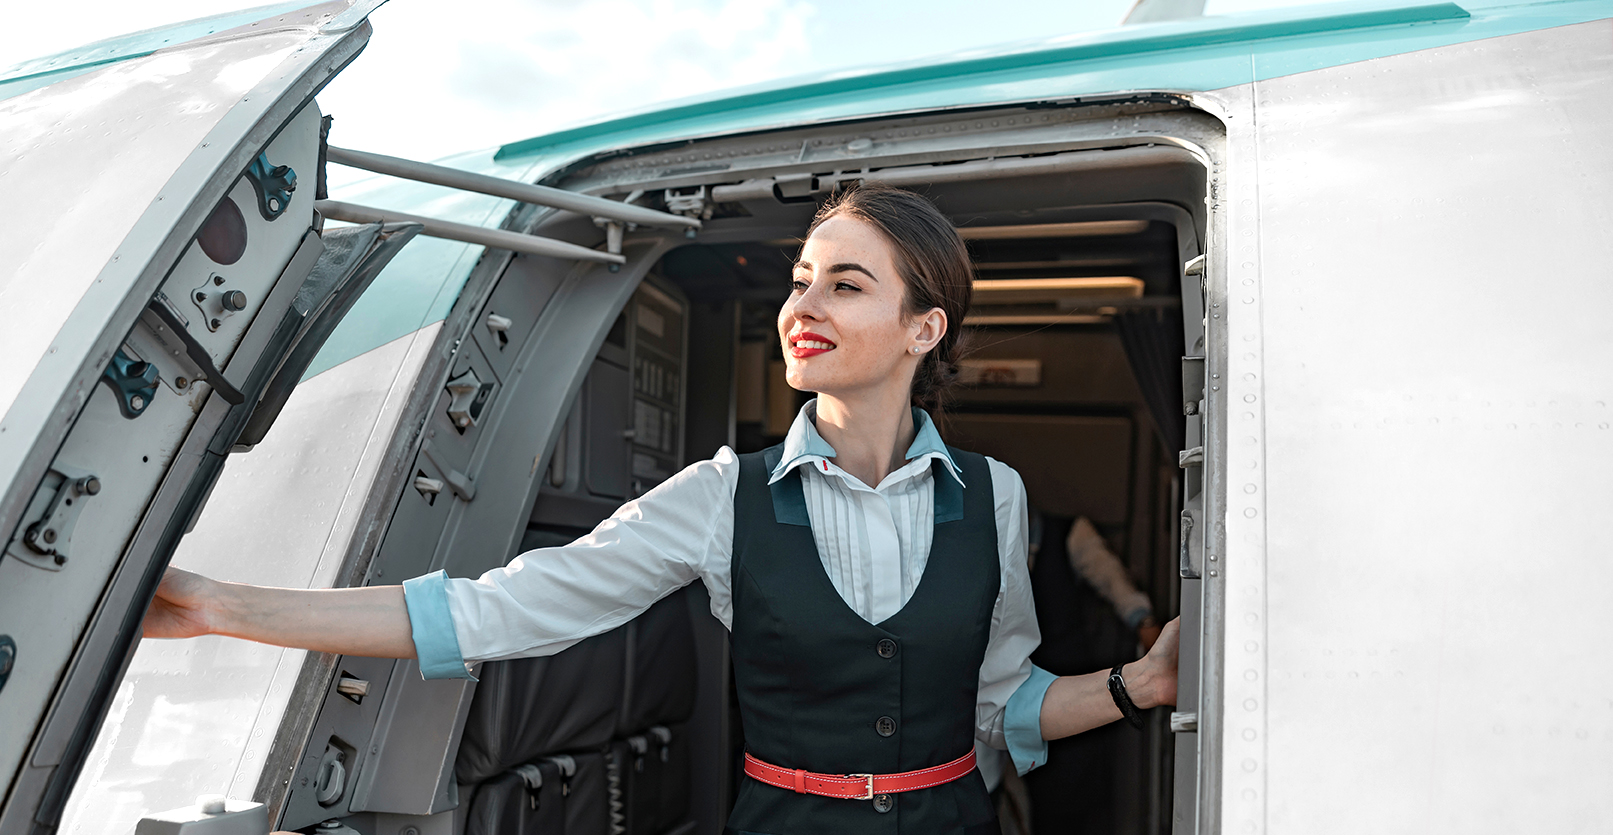 Air Nostrum busca en Valencia tripulantes de cabina de pasajeros